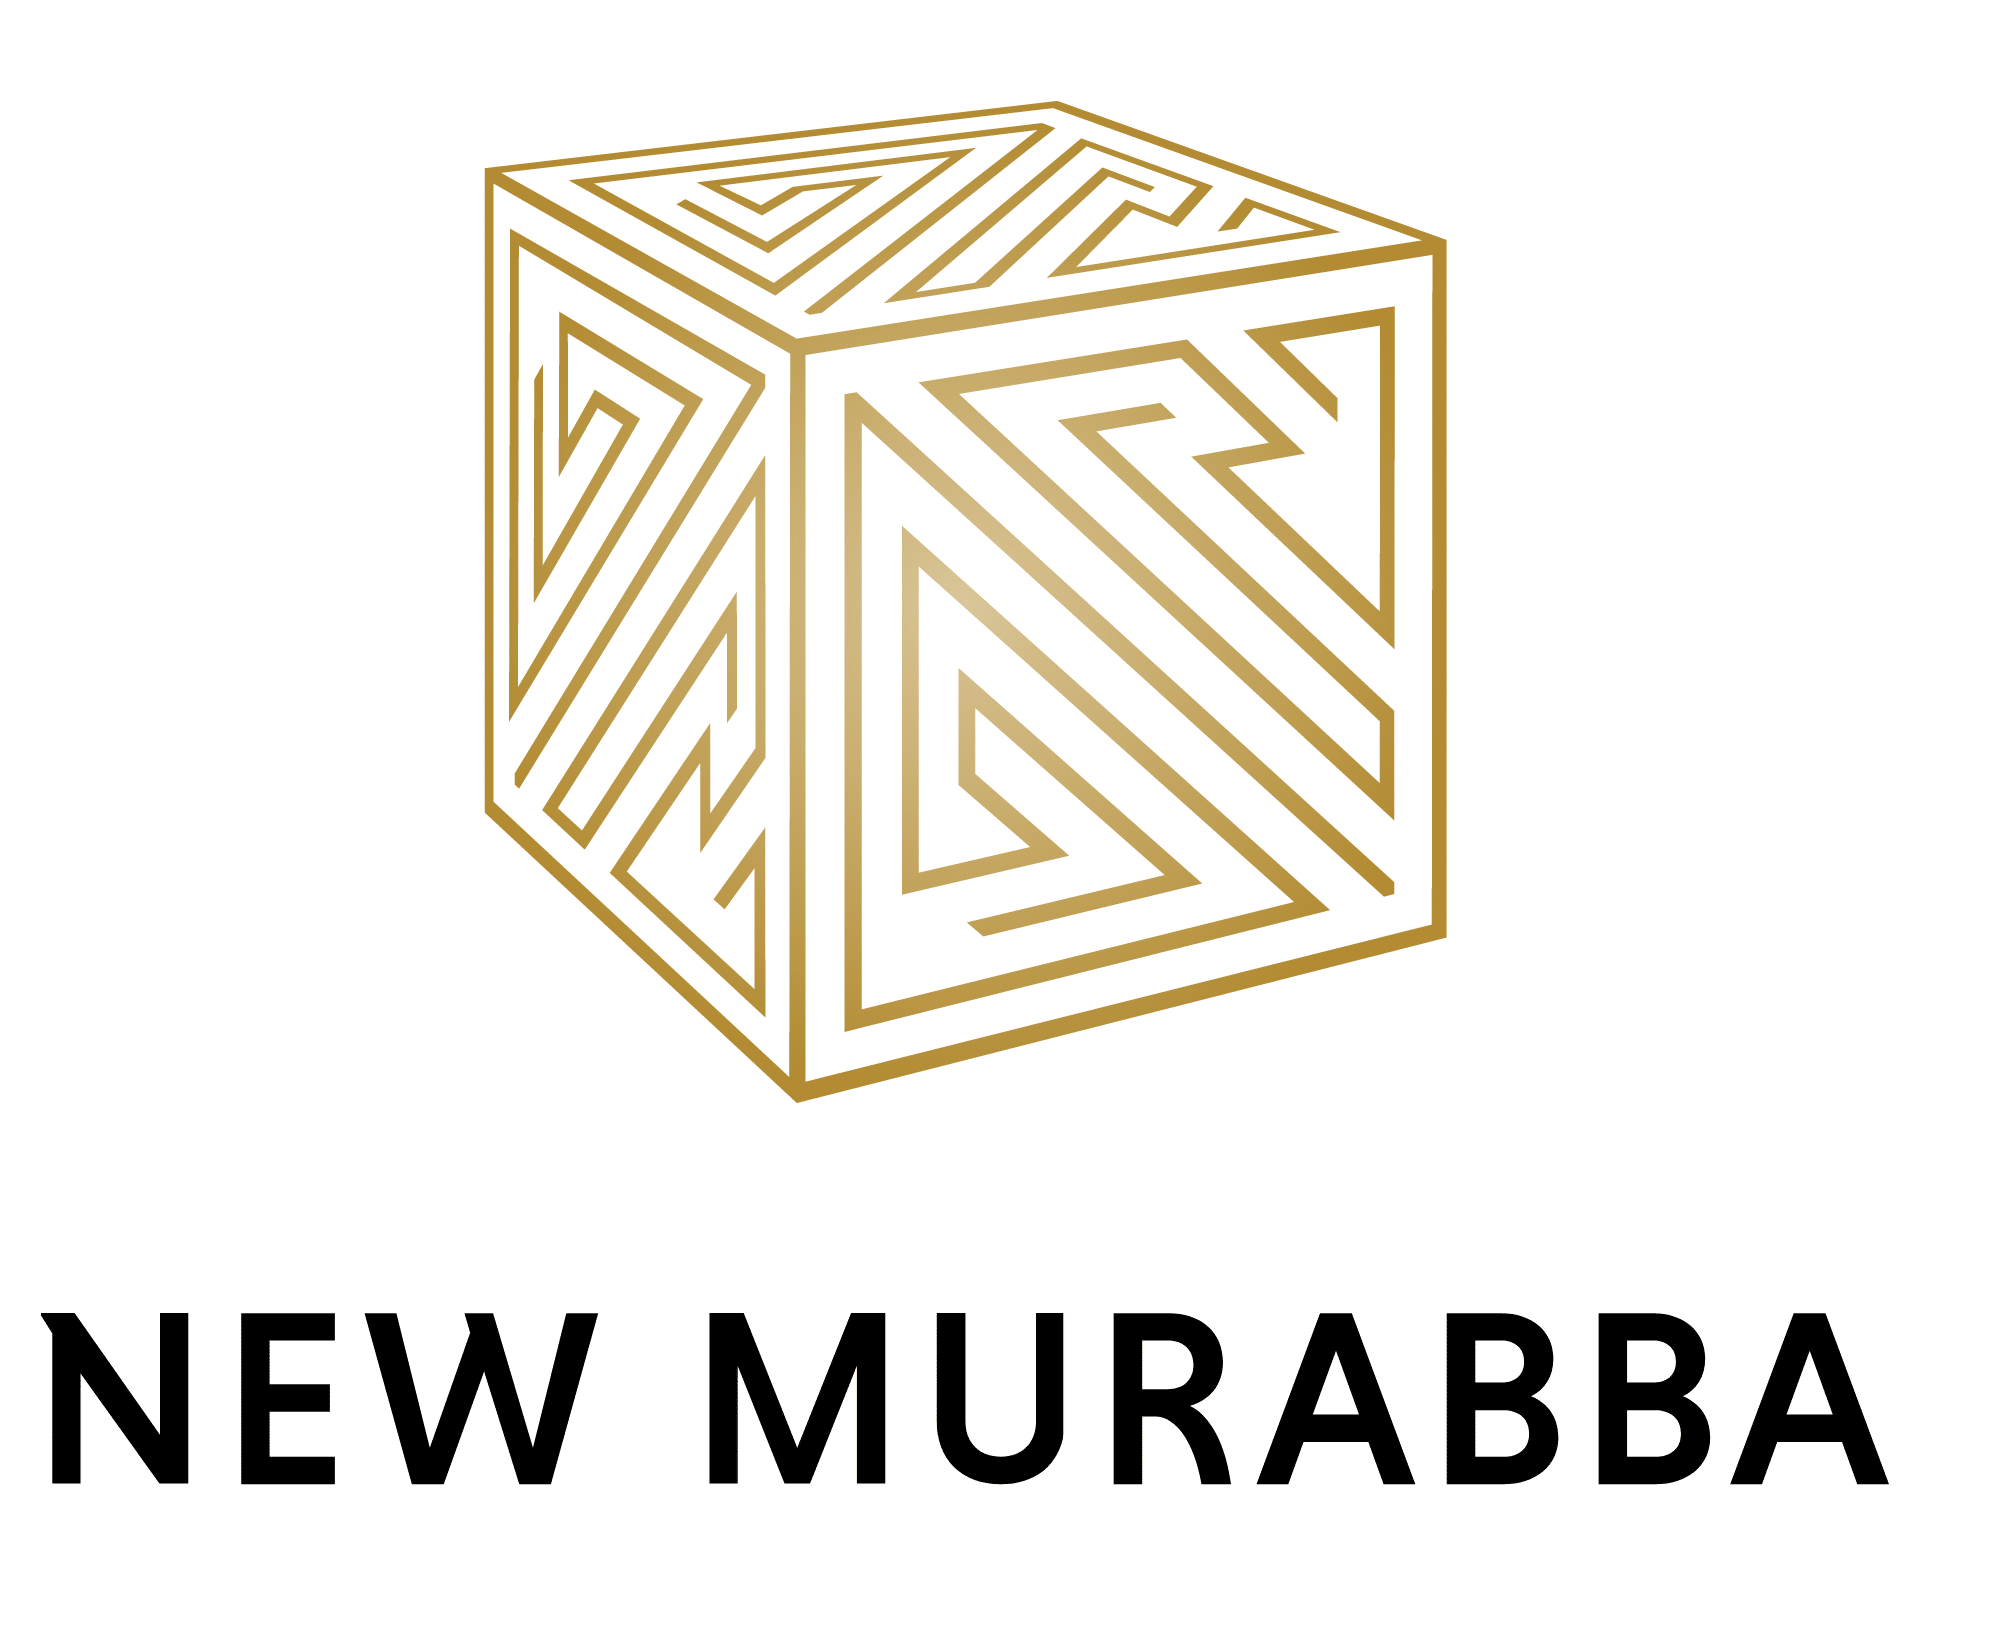 New Murabba